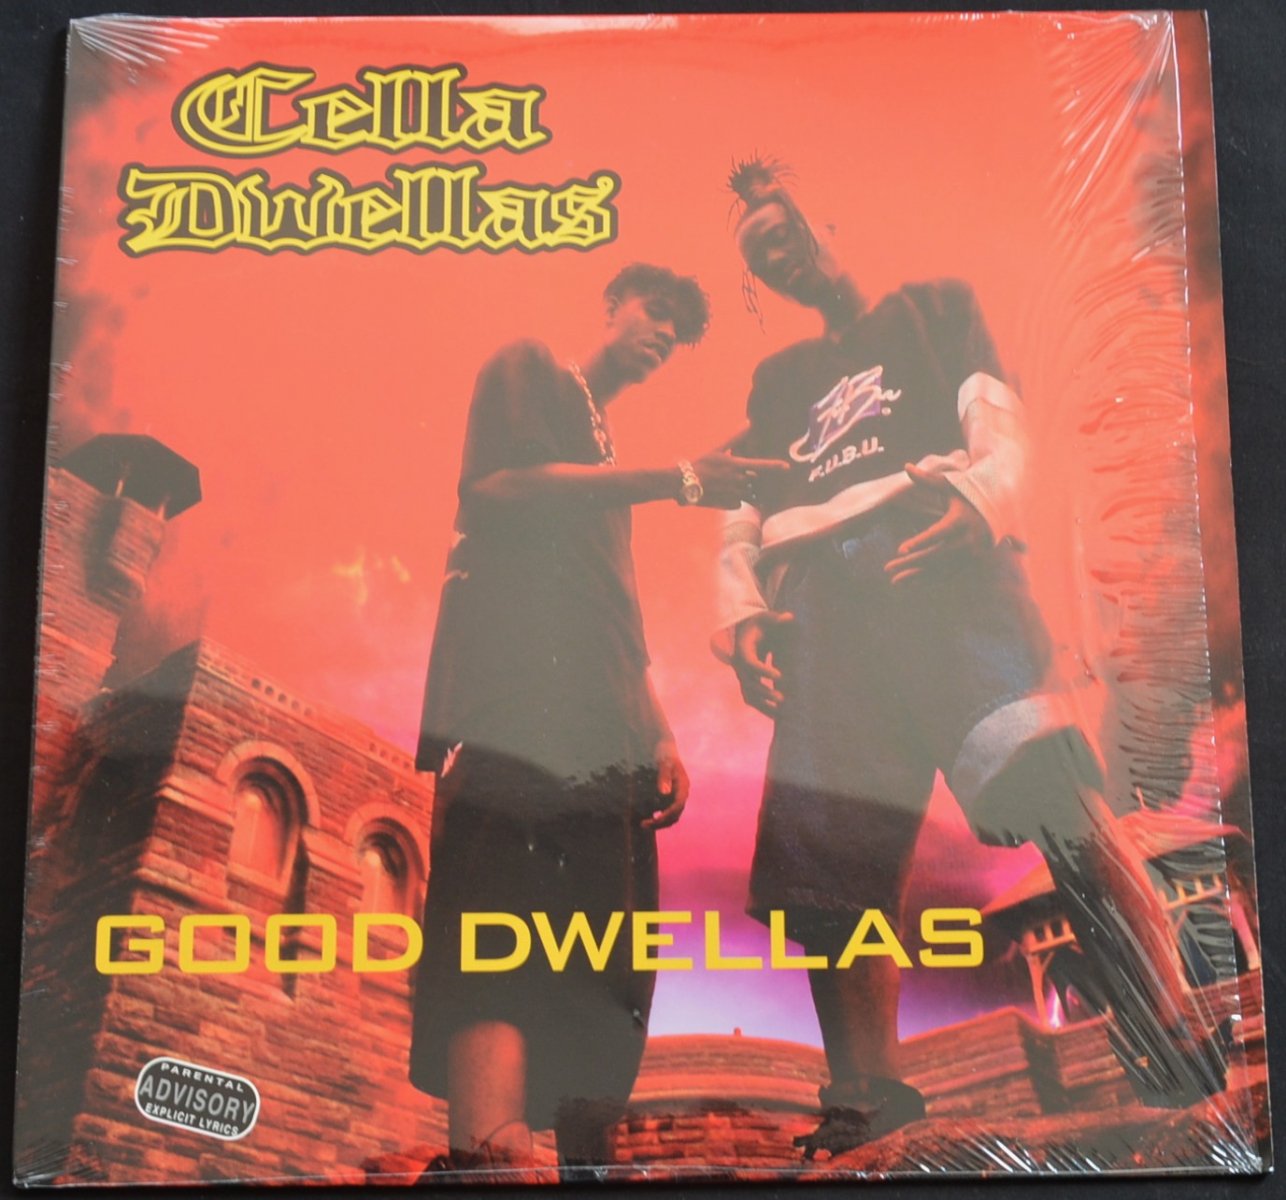 CELLA DWELLAS / GOOD DWELLAS (12